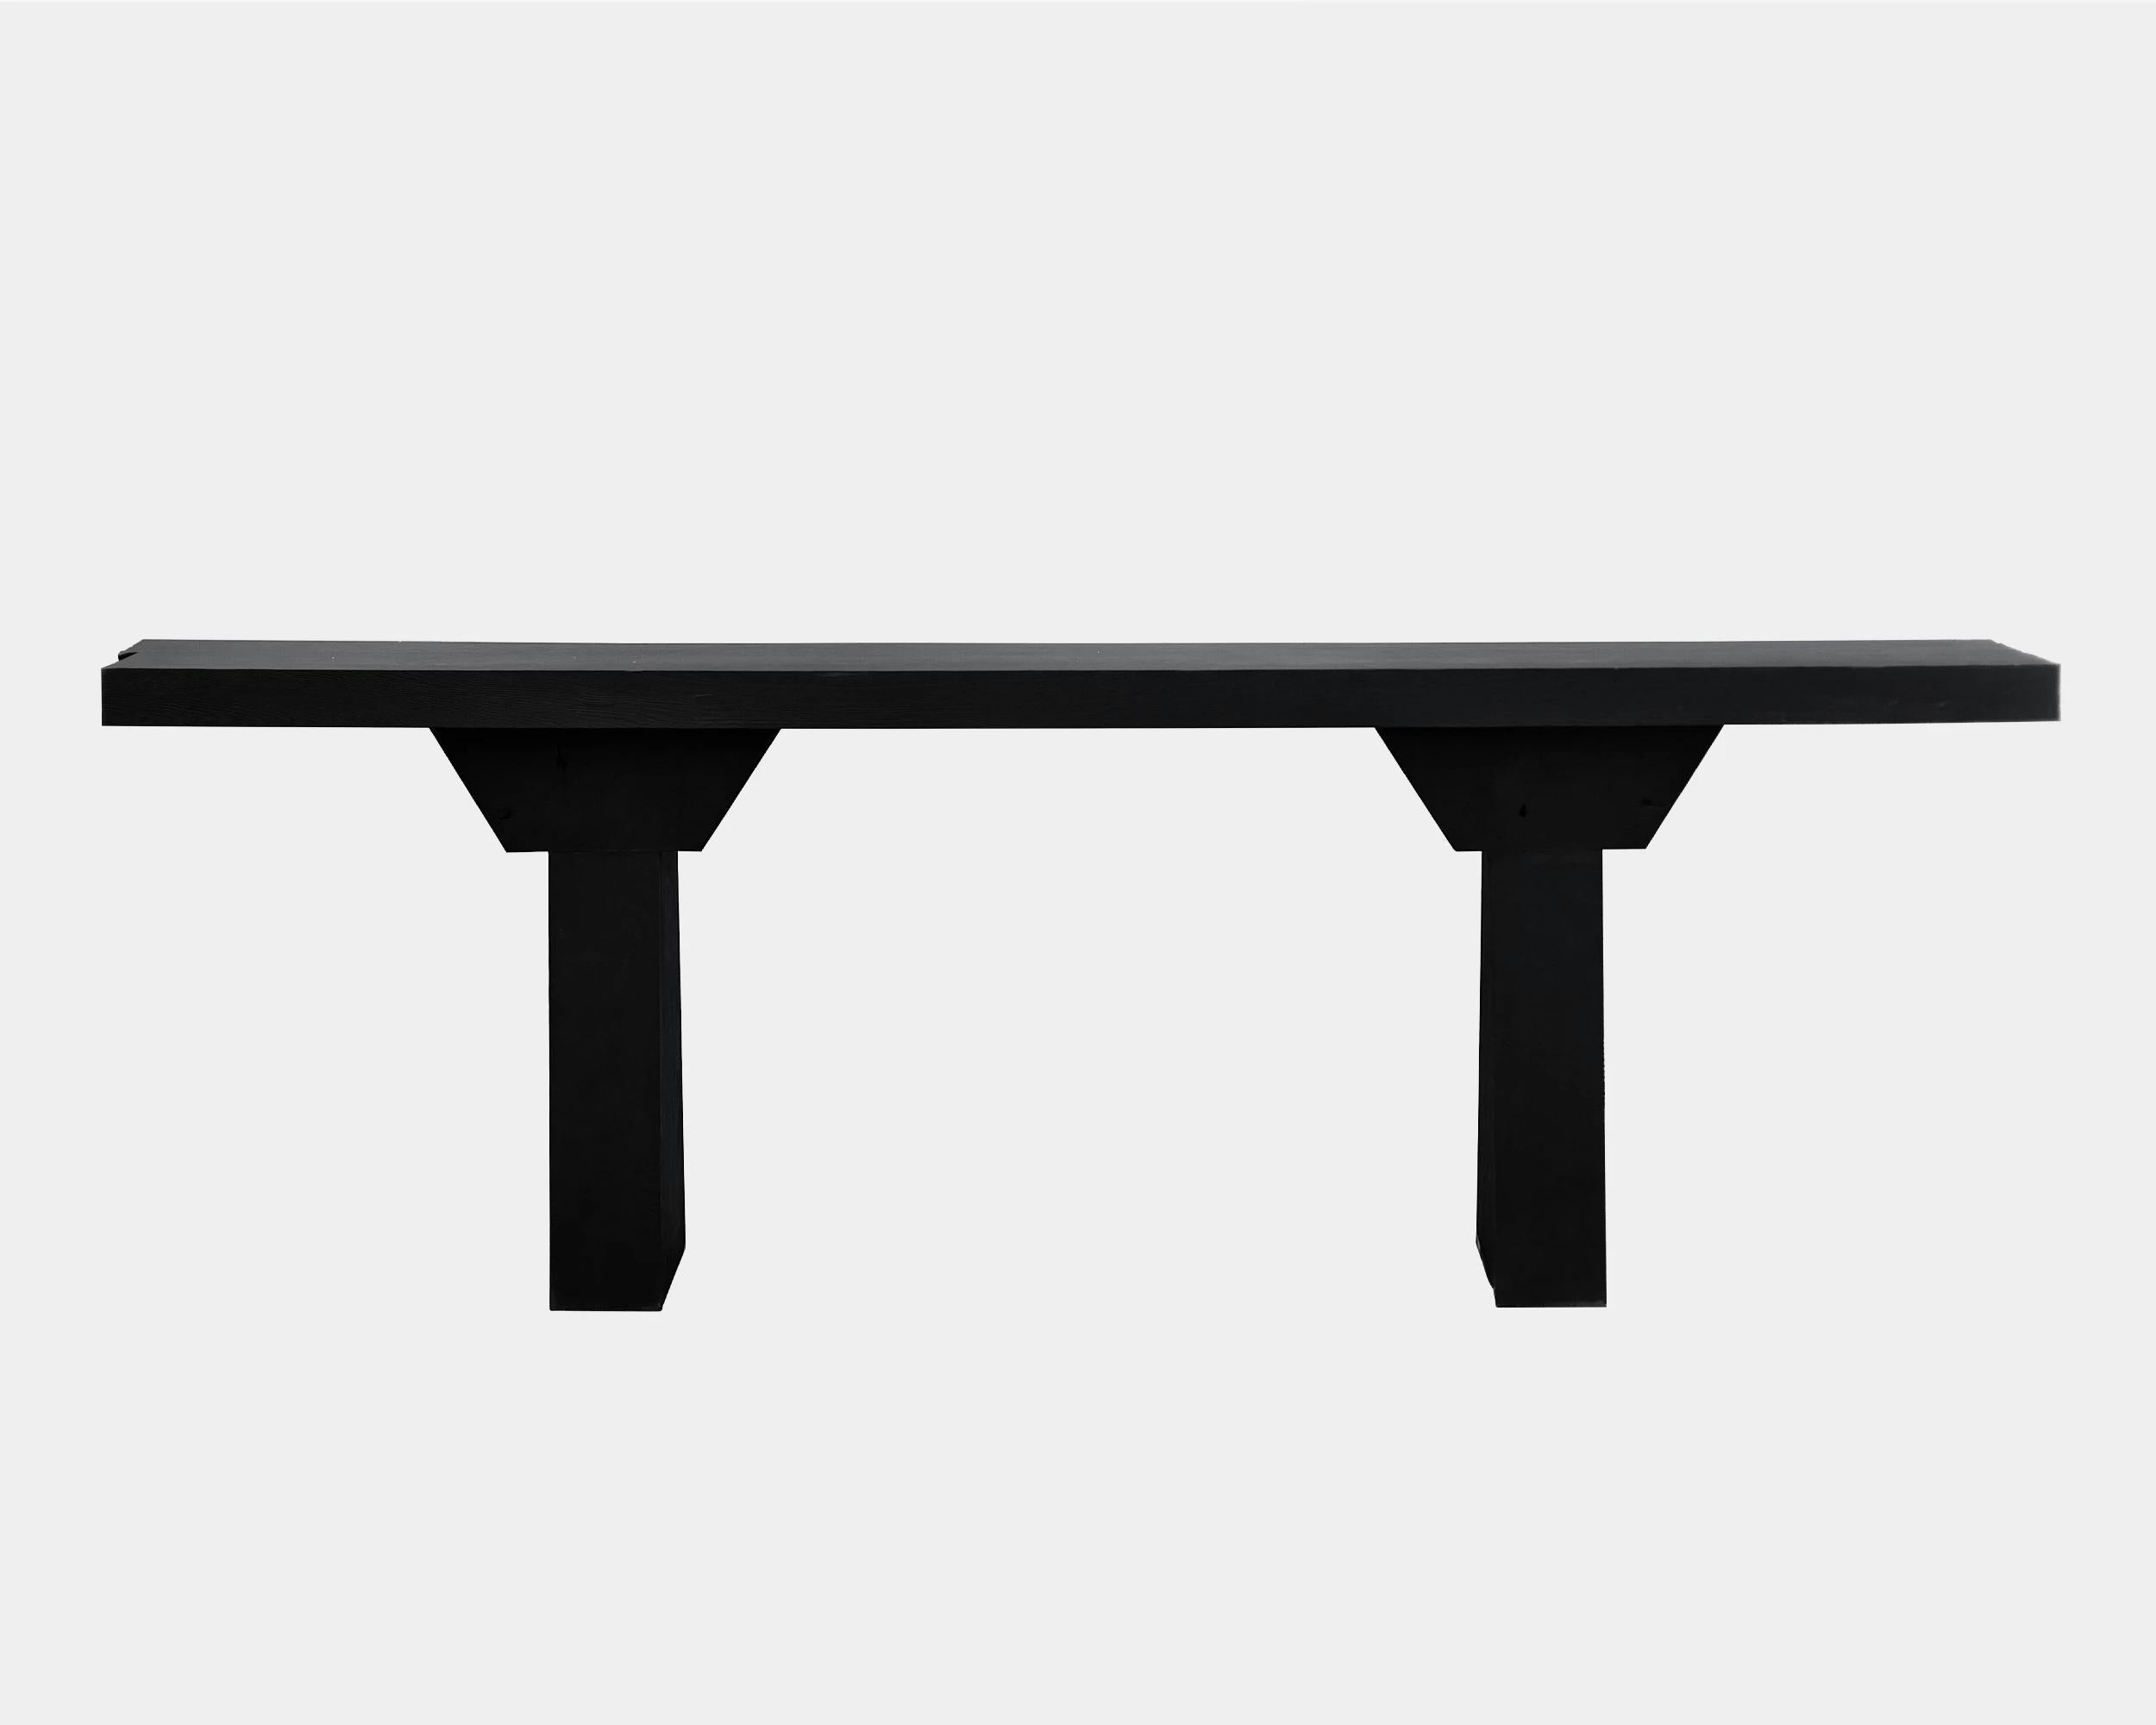 Table console personnalisable Acros de Camilo Andres Rodriguez Marquez (alias CarmWorks).

Chêne massif ou cèdre / bois brûlé ou naturel.
Taille standard : H 76 x 220 x 40 cm (personnalisable).

Chaque pièce est réalisée sur commande et